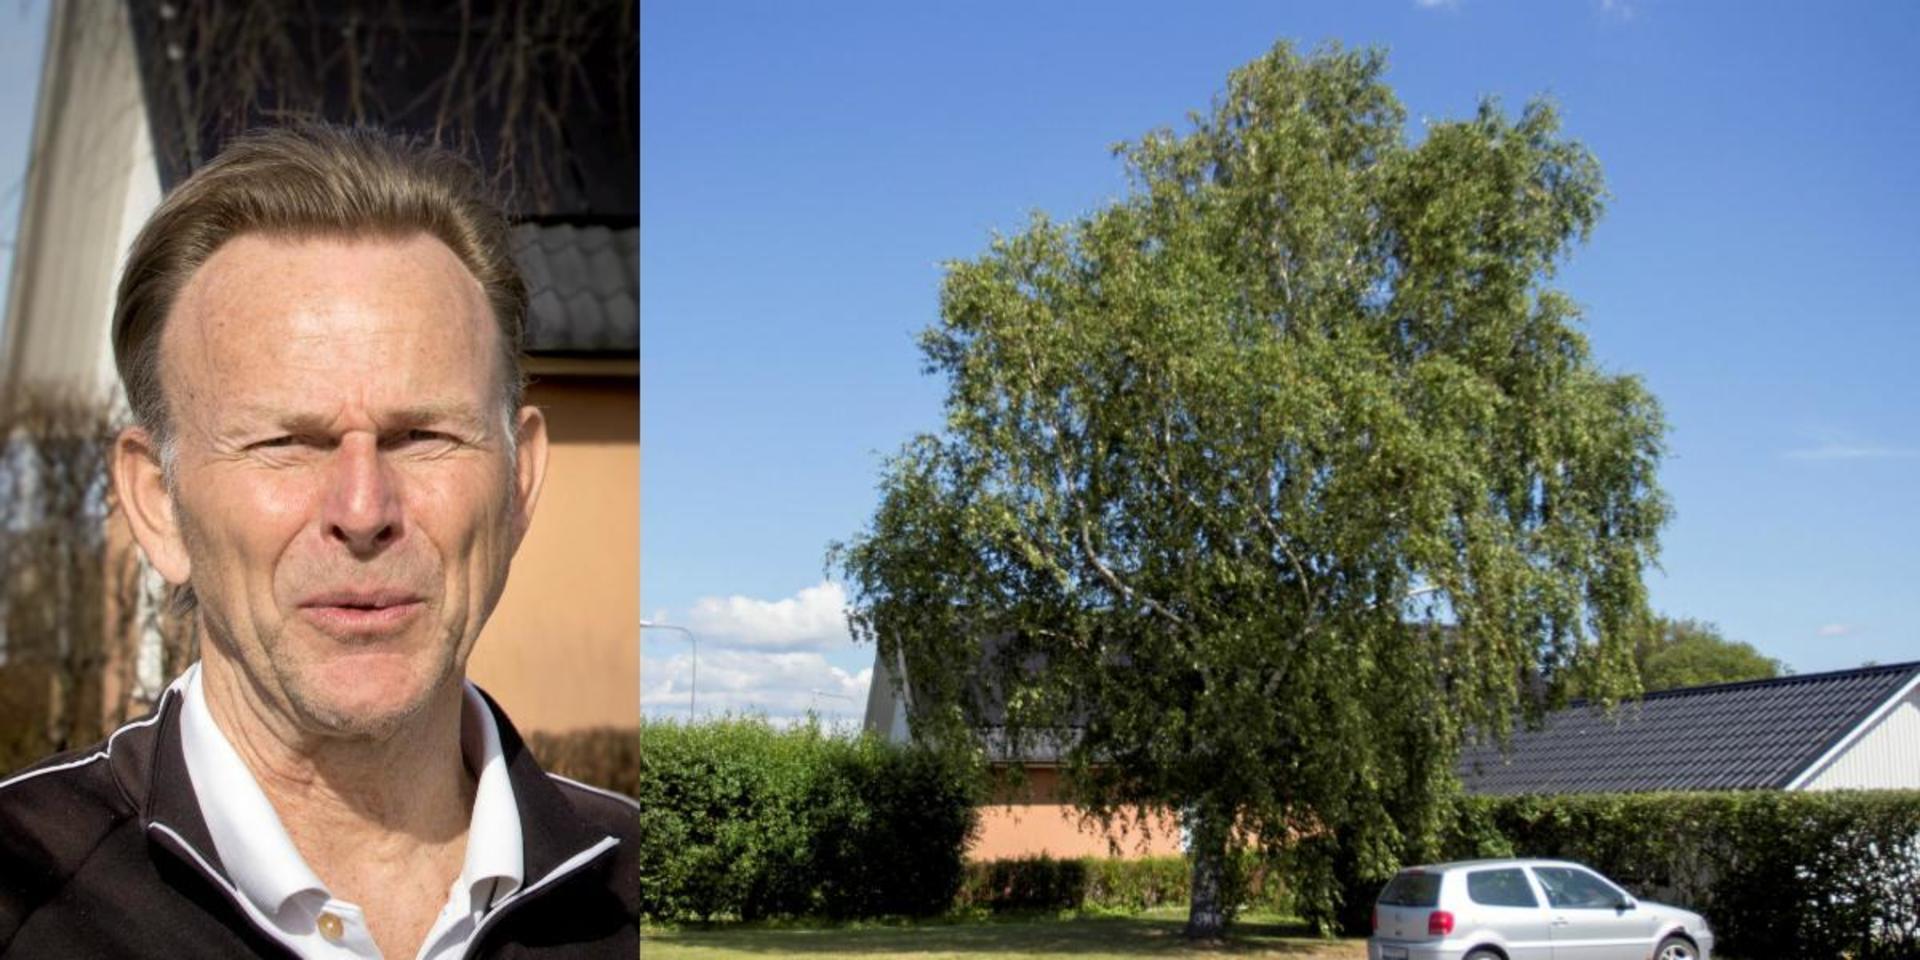 Lars Pålsson överklagade kommunens beslut att inte ta ner trädet som skuggar hans solpaneler. Men beslut om verkställighet som har fattats direkt av stadsträdgårdsmästaren går inte att överklaga, enligt domen.